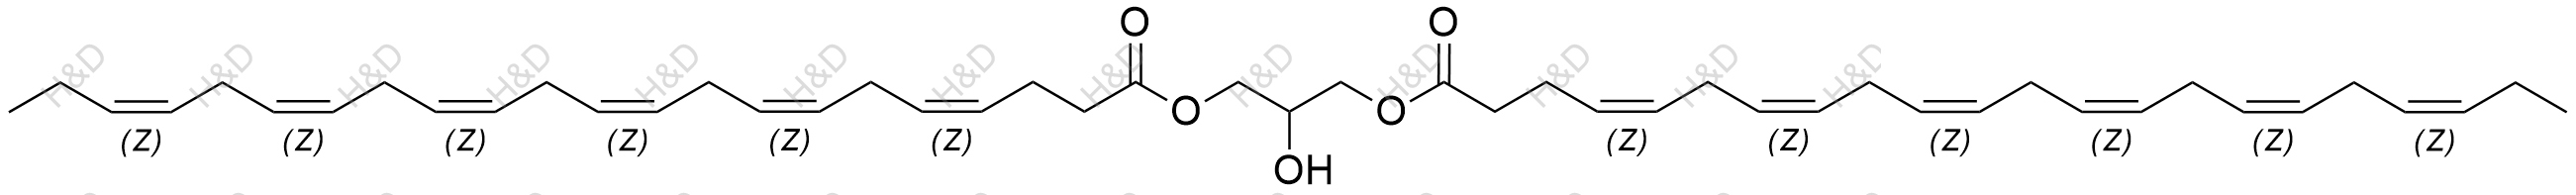 二十二碳六烯酸甘油二酯